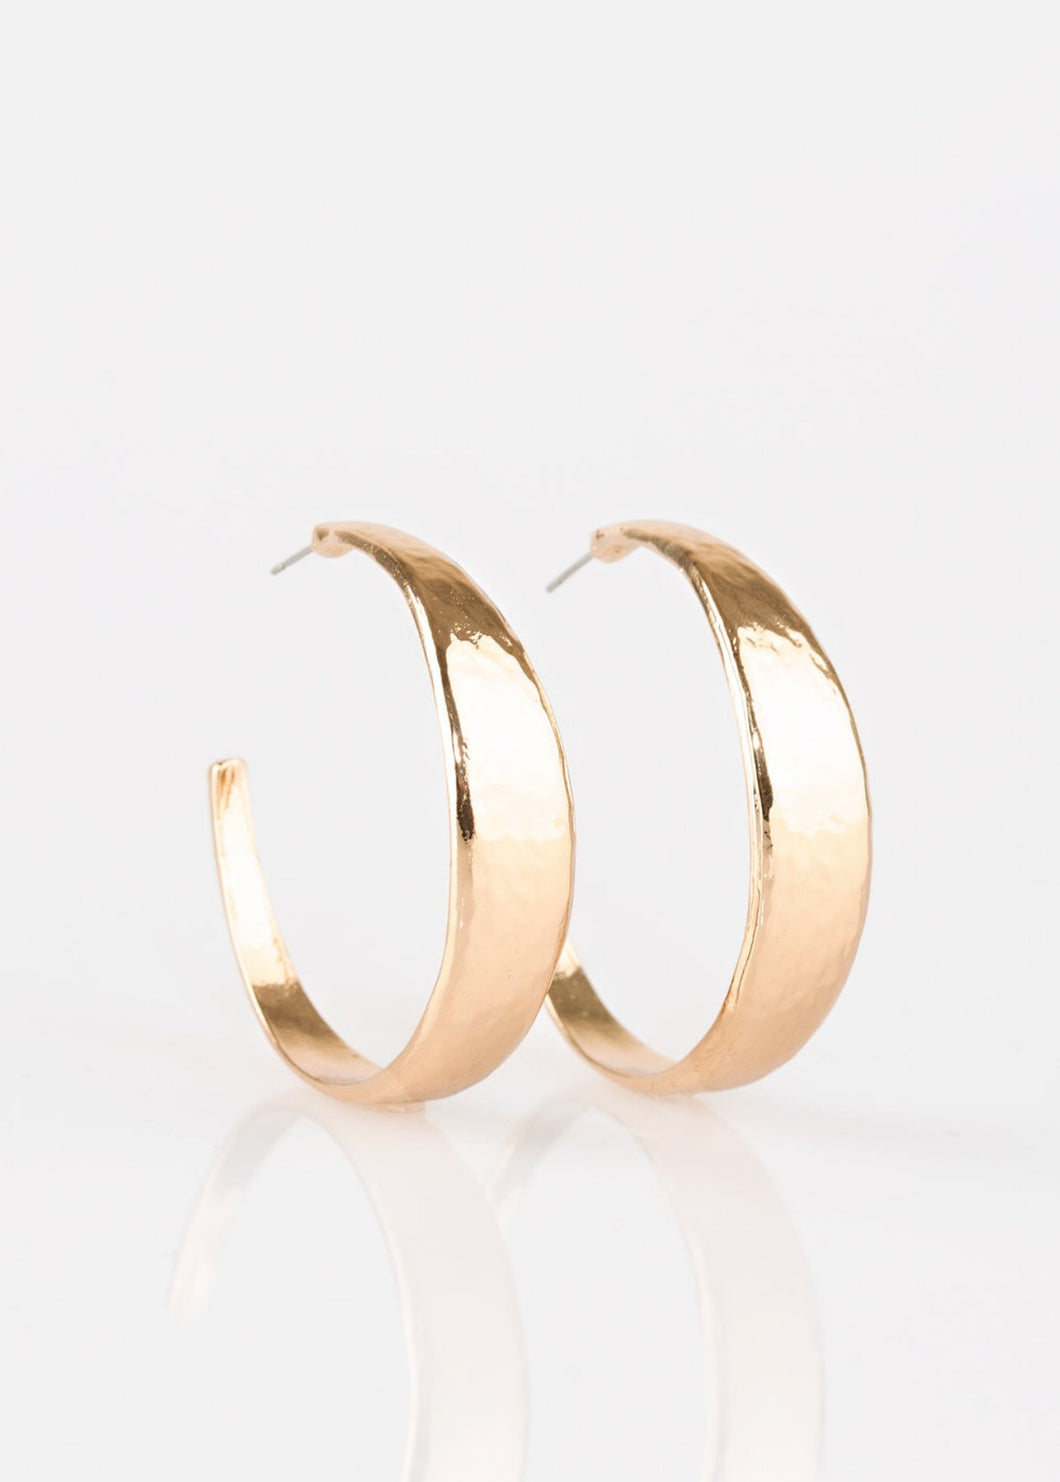 HOOP and Holler Gold Hoop Earrings